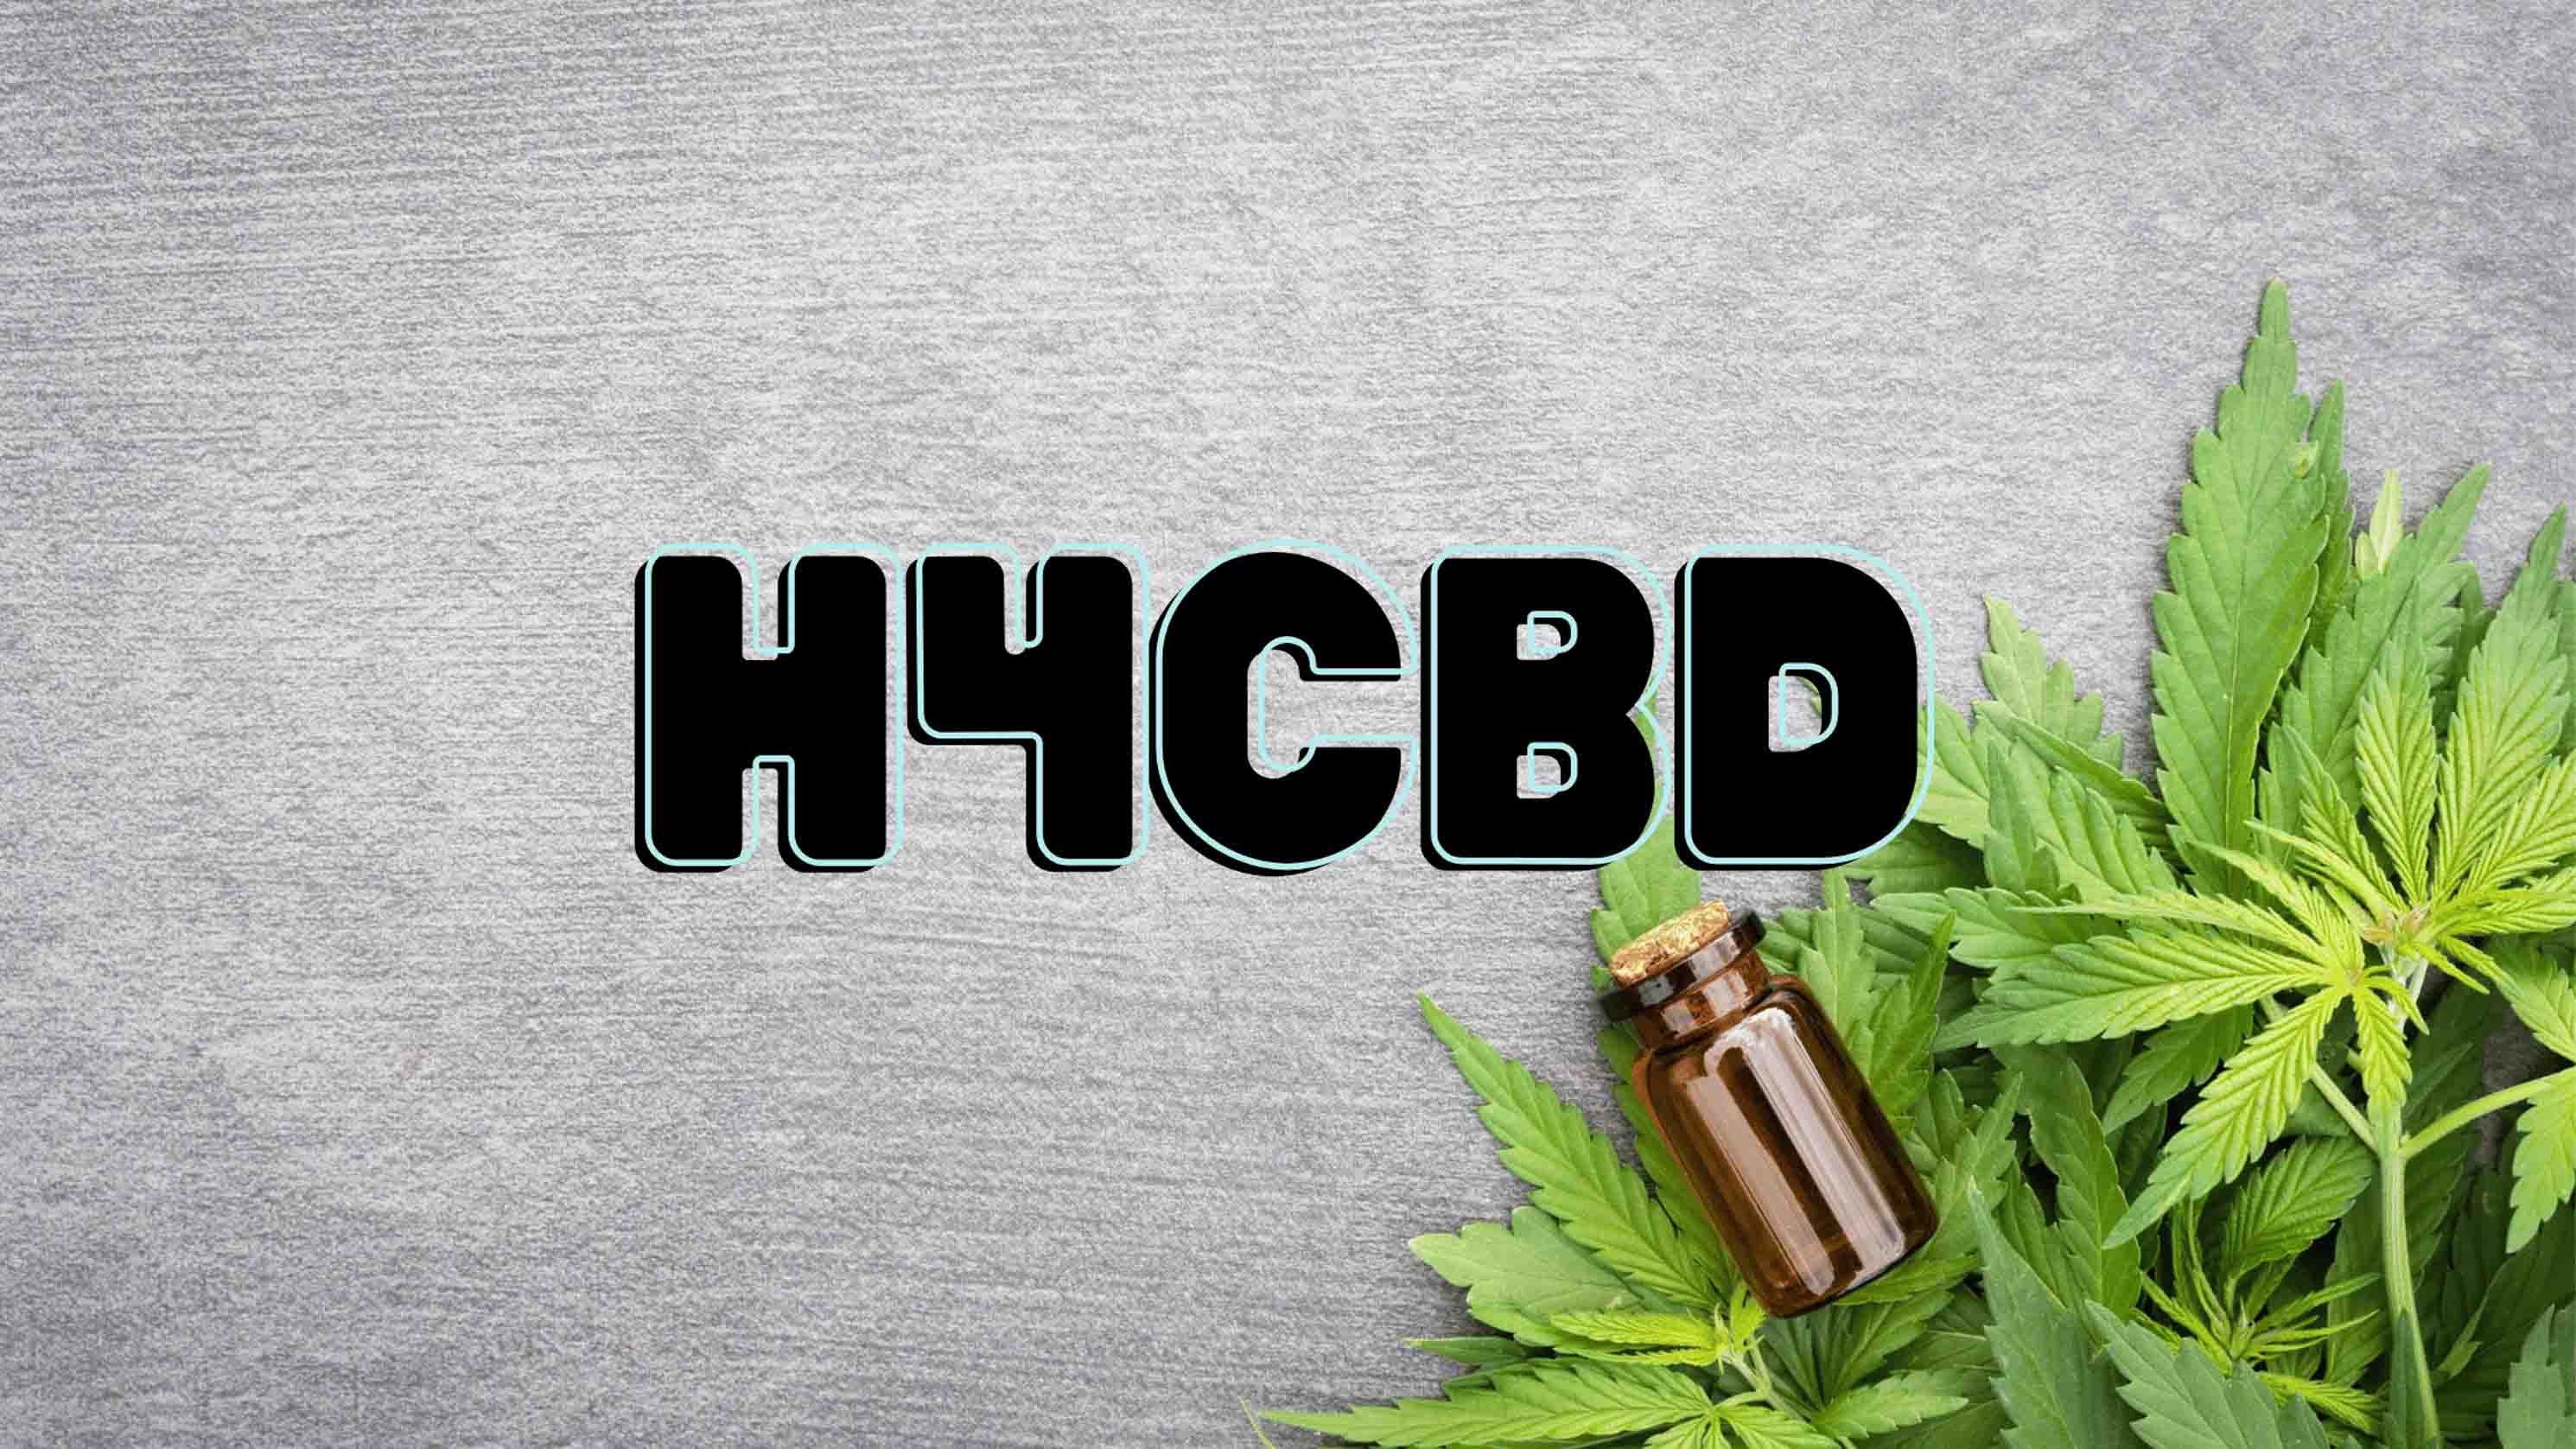 Cannabisblätter mit der Überschrift "was ist H4CBD"